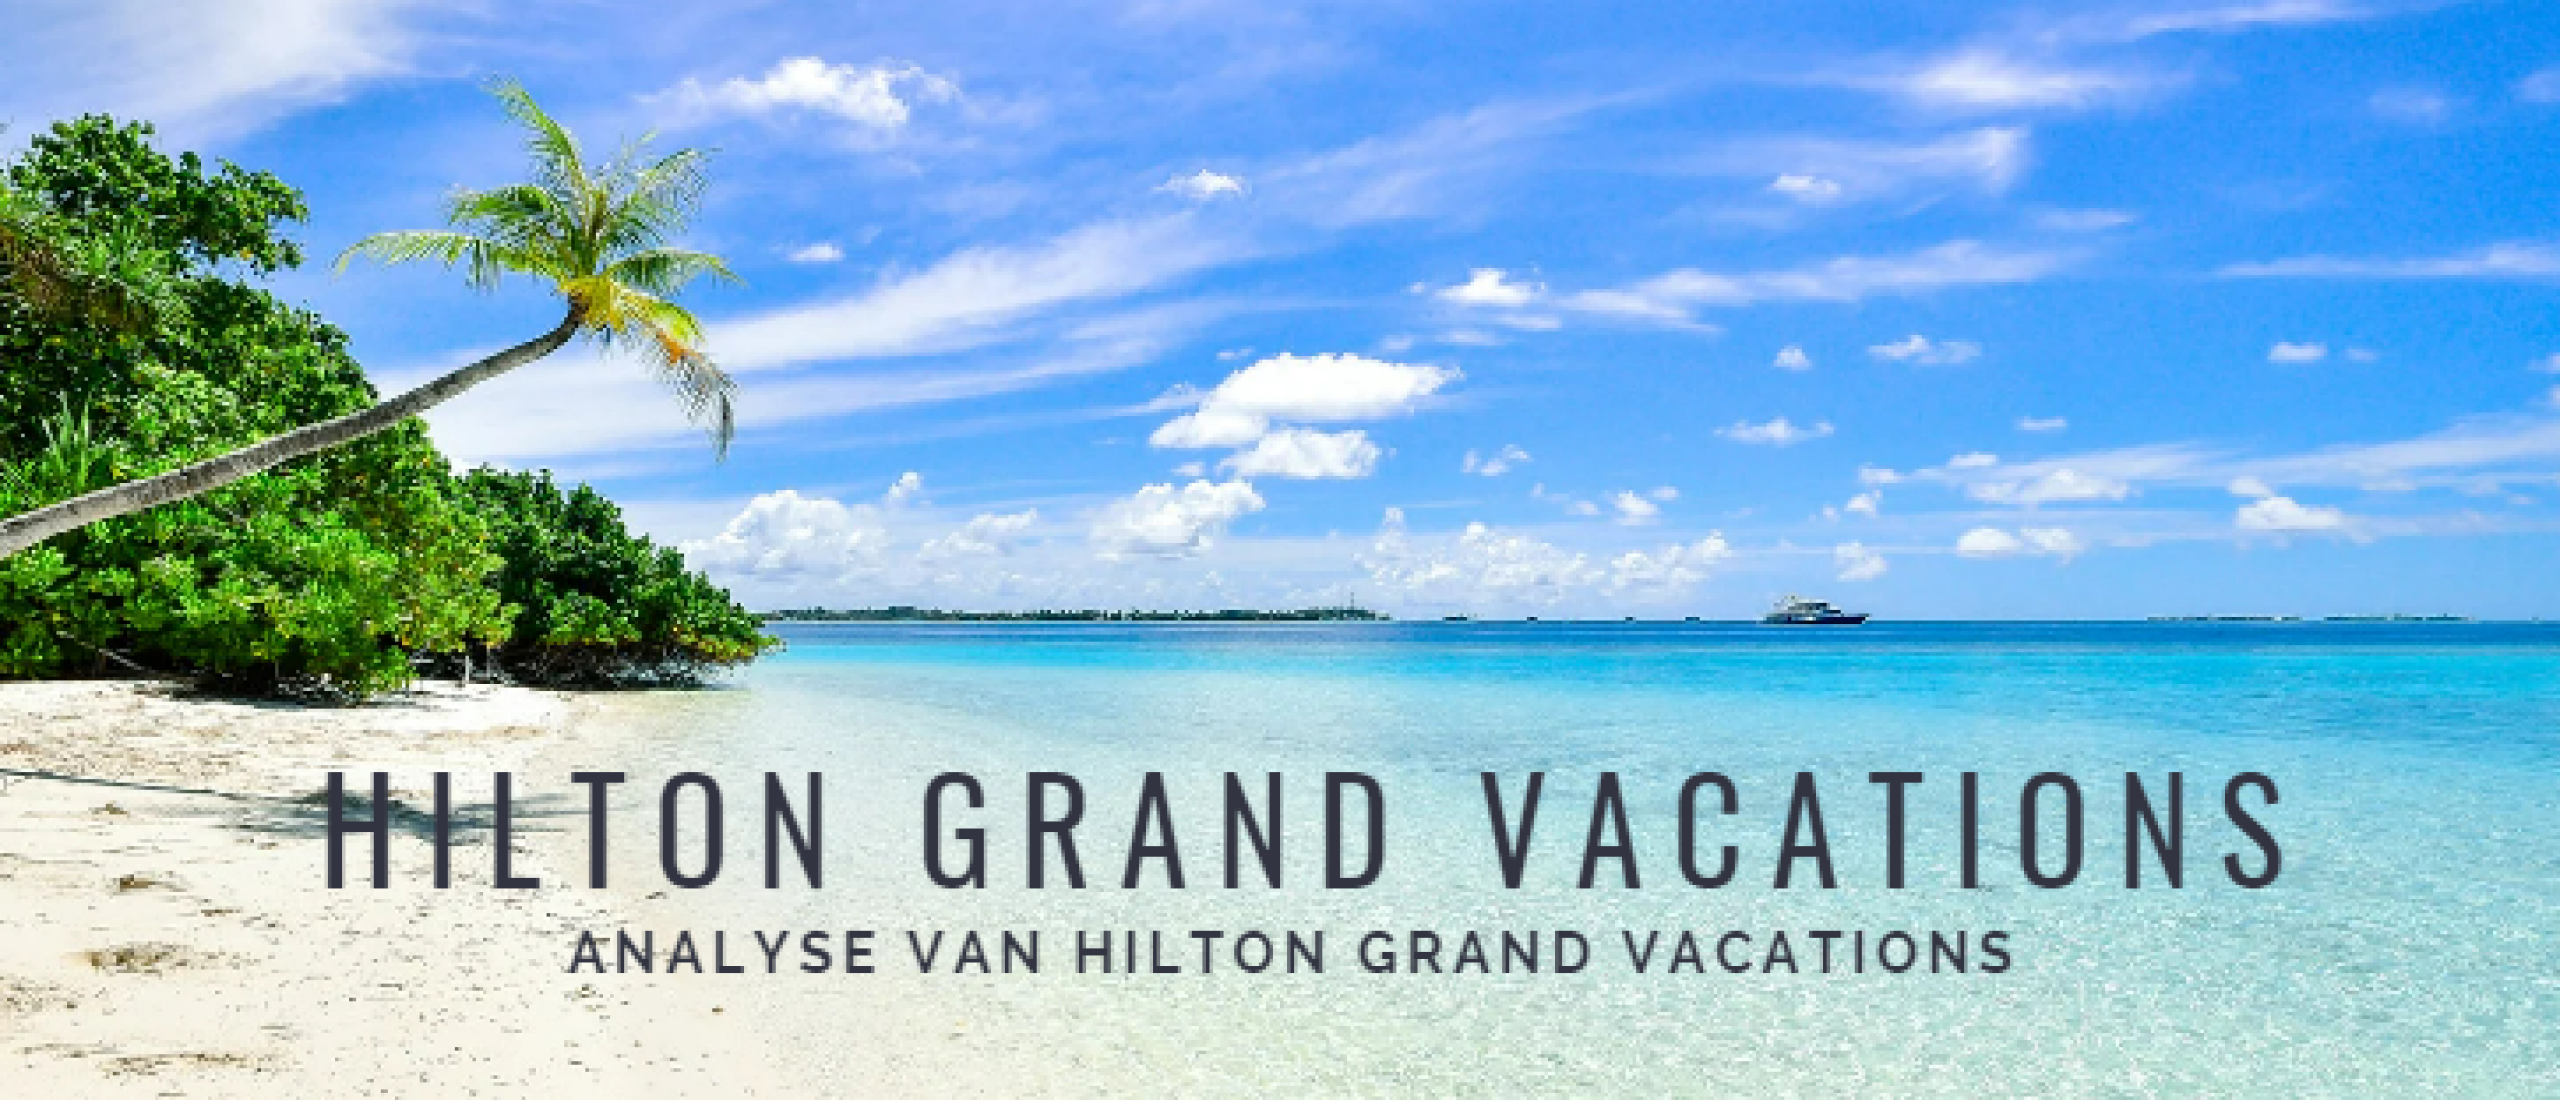 Hilton Grand Vacations Aandelen kopen? Analyse +47% Groei | Happy Investors